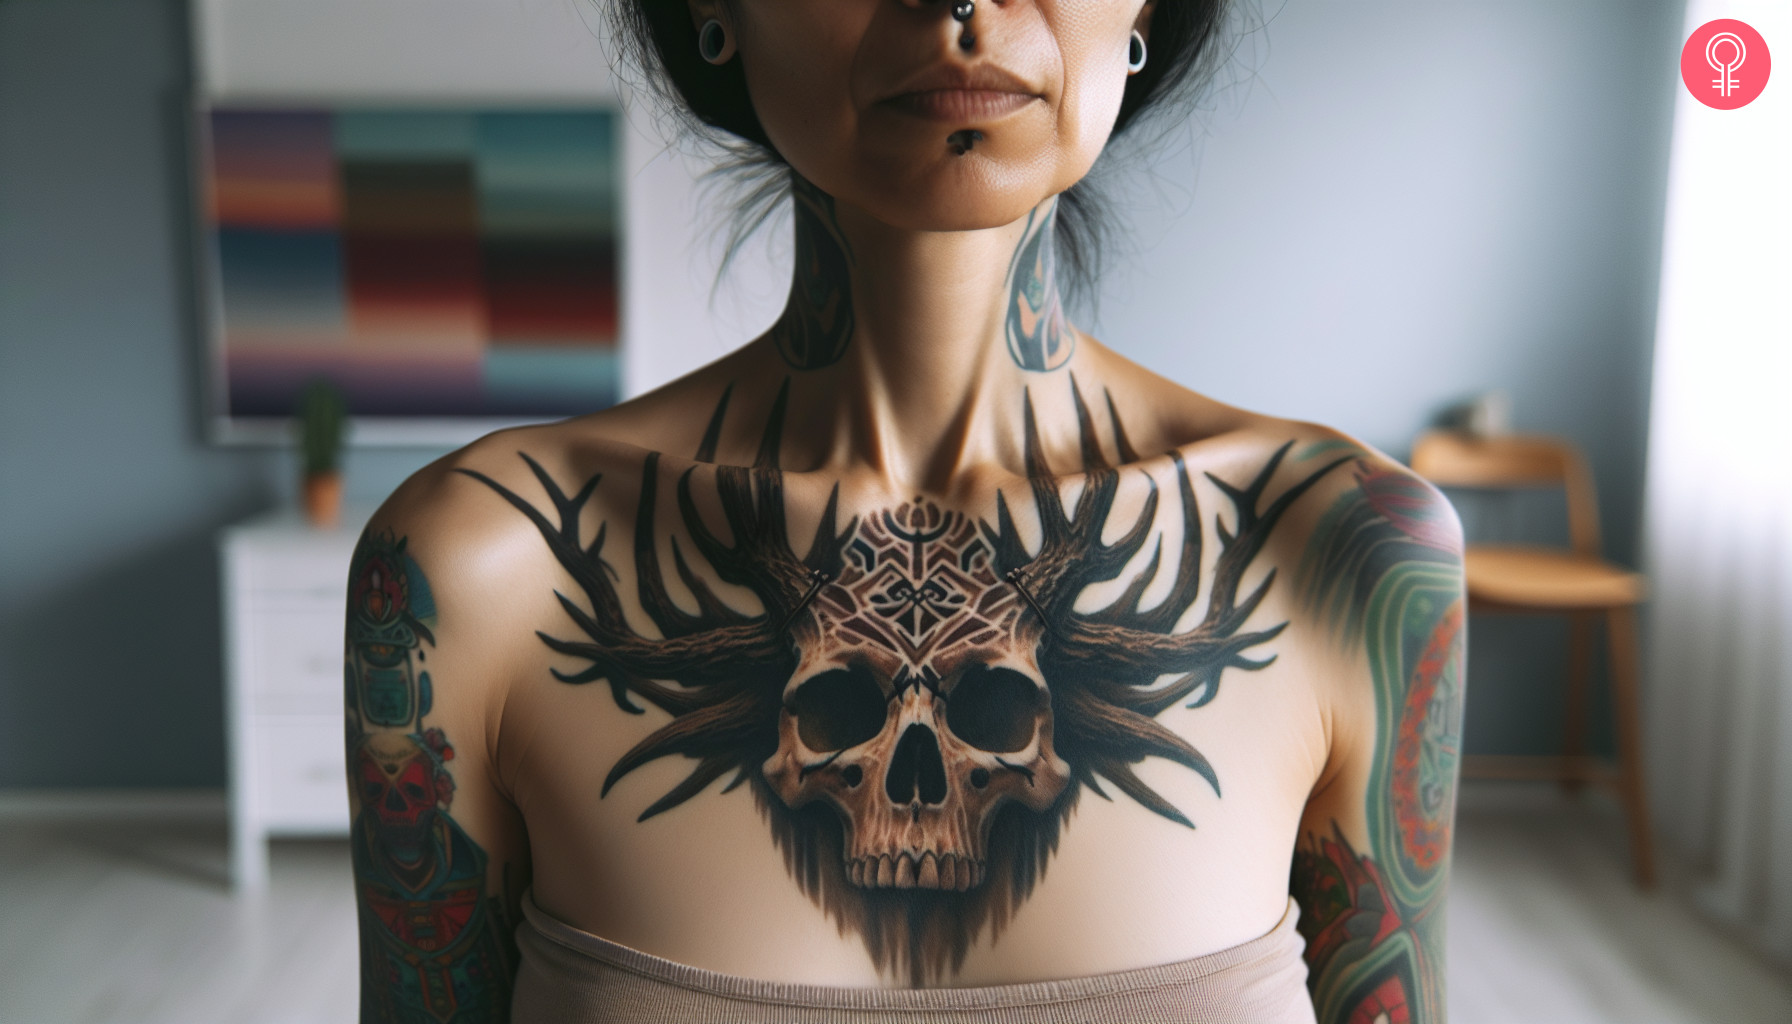 A wendigo chest tattoo